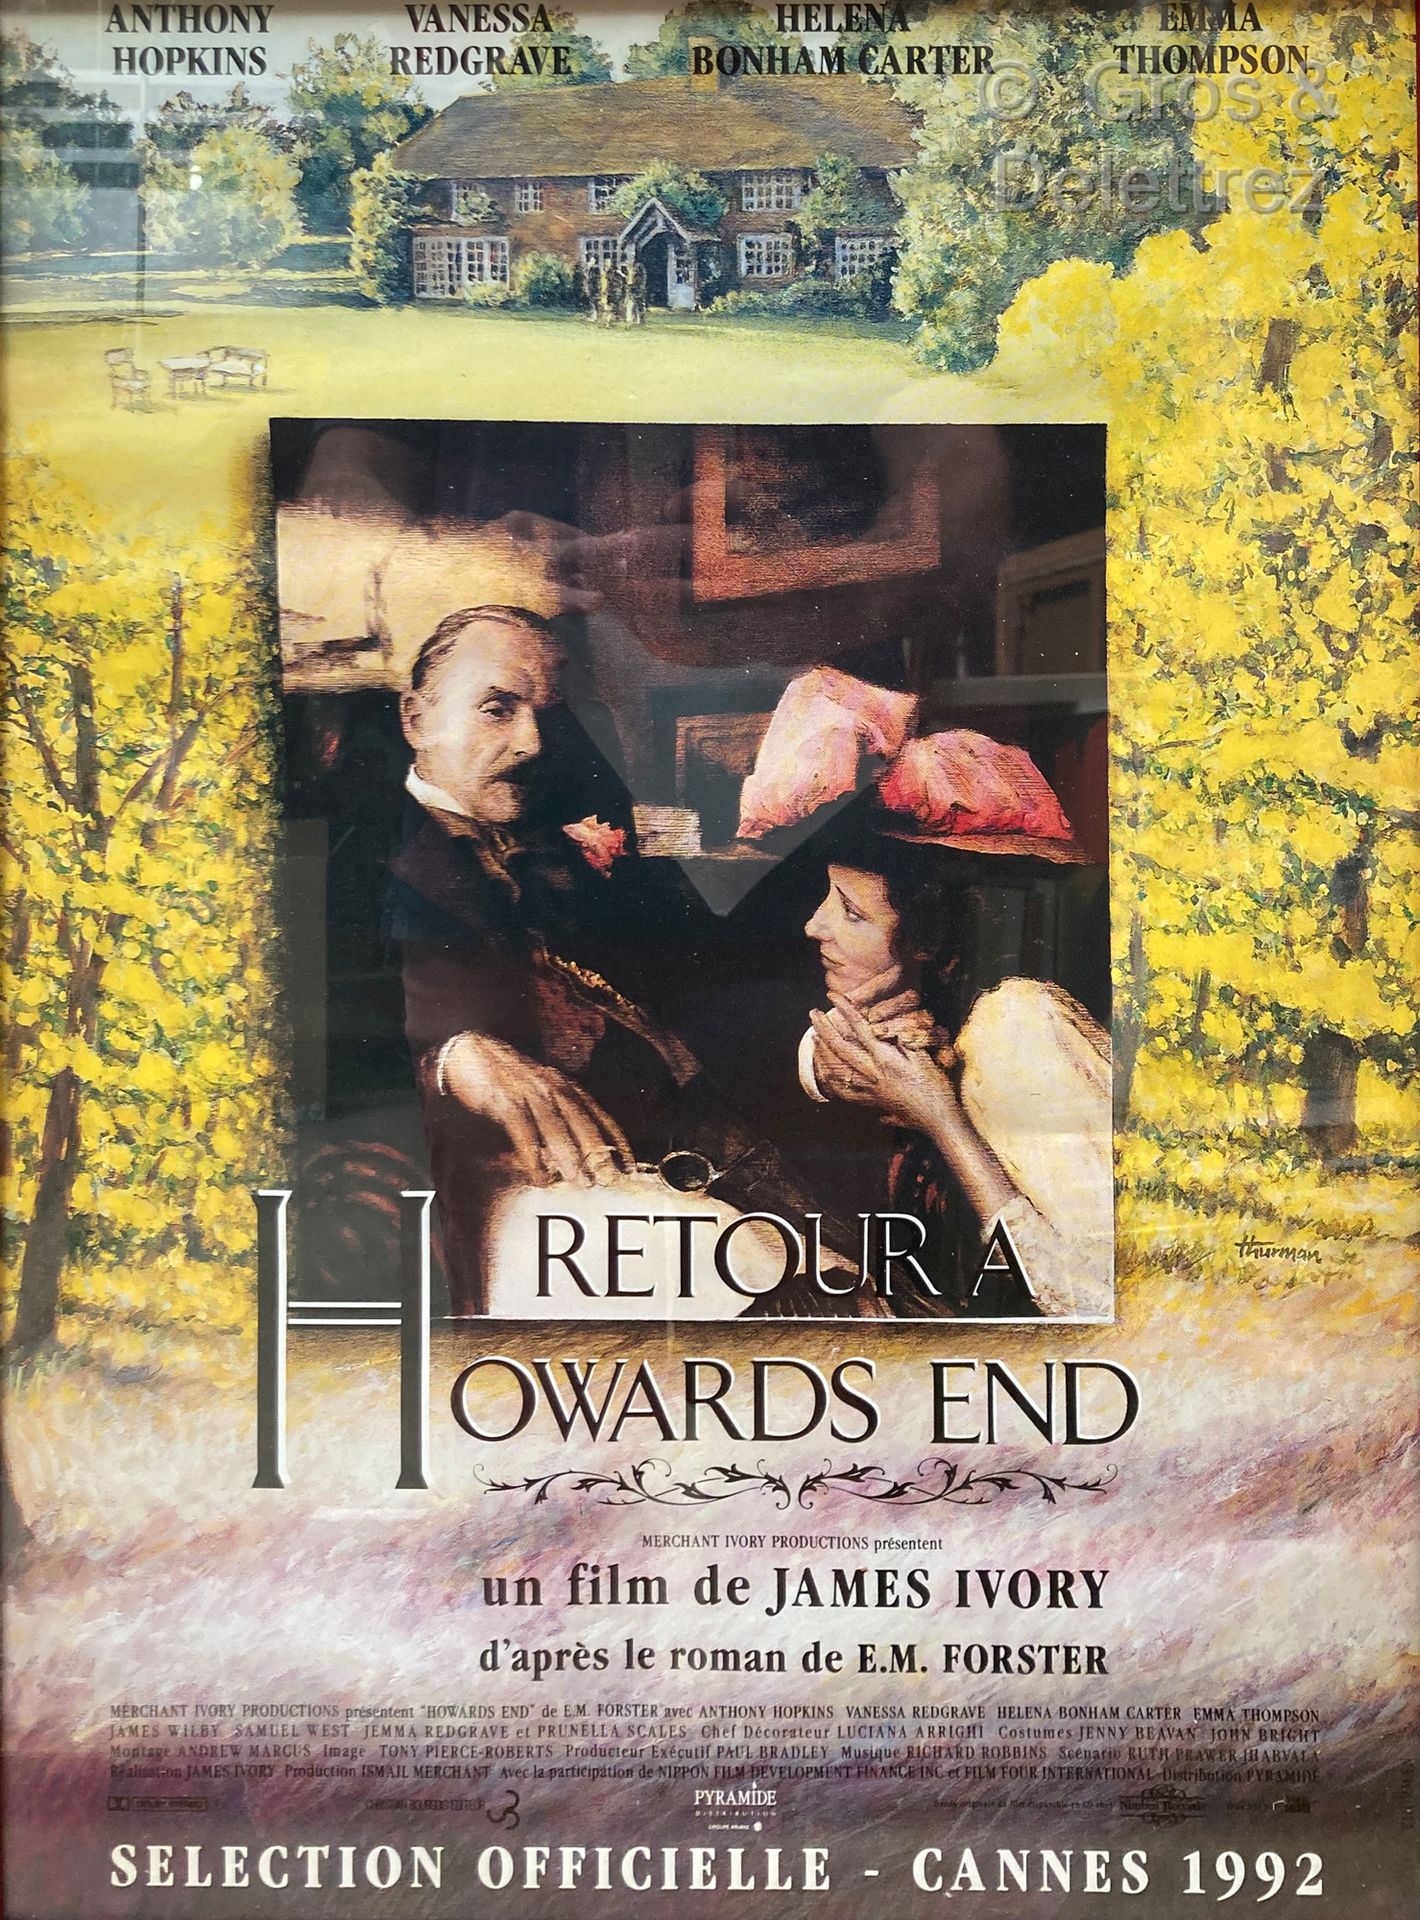 James IVORY RITORNO A HOWARDS END

Locandina del film

54 x 39 cm sotto vetro